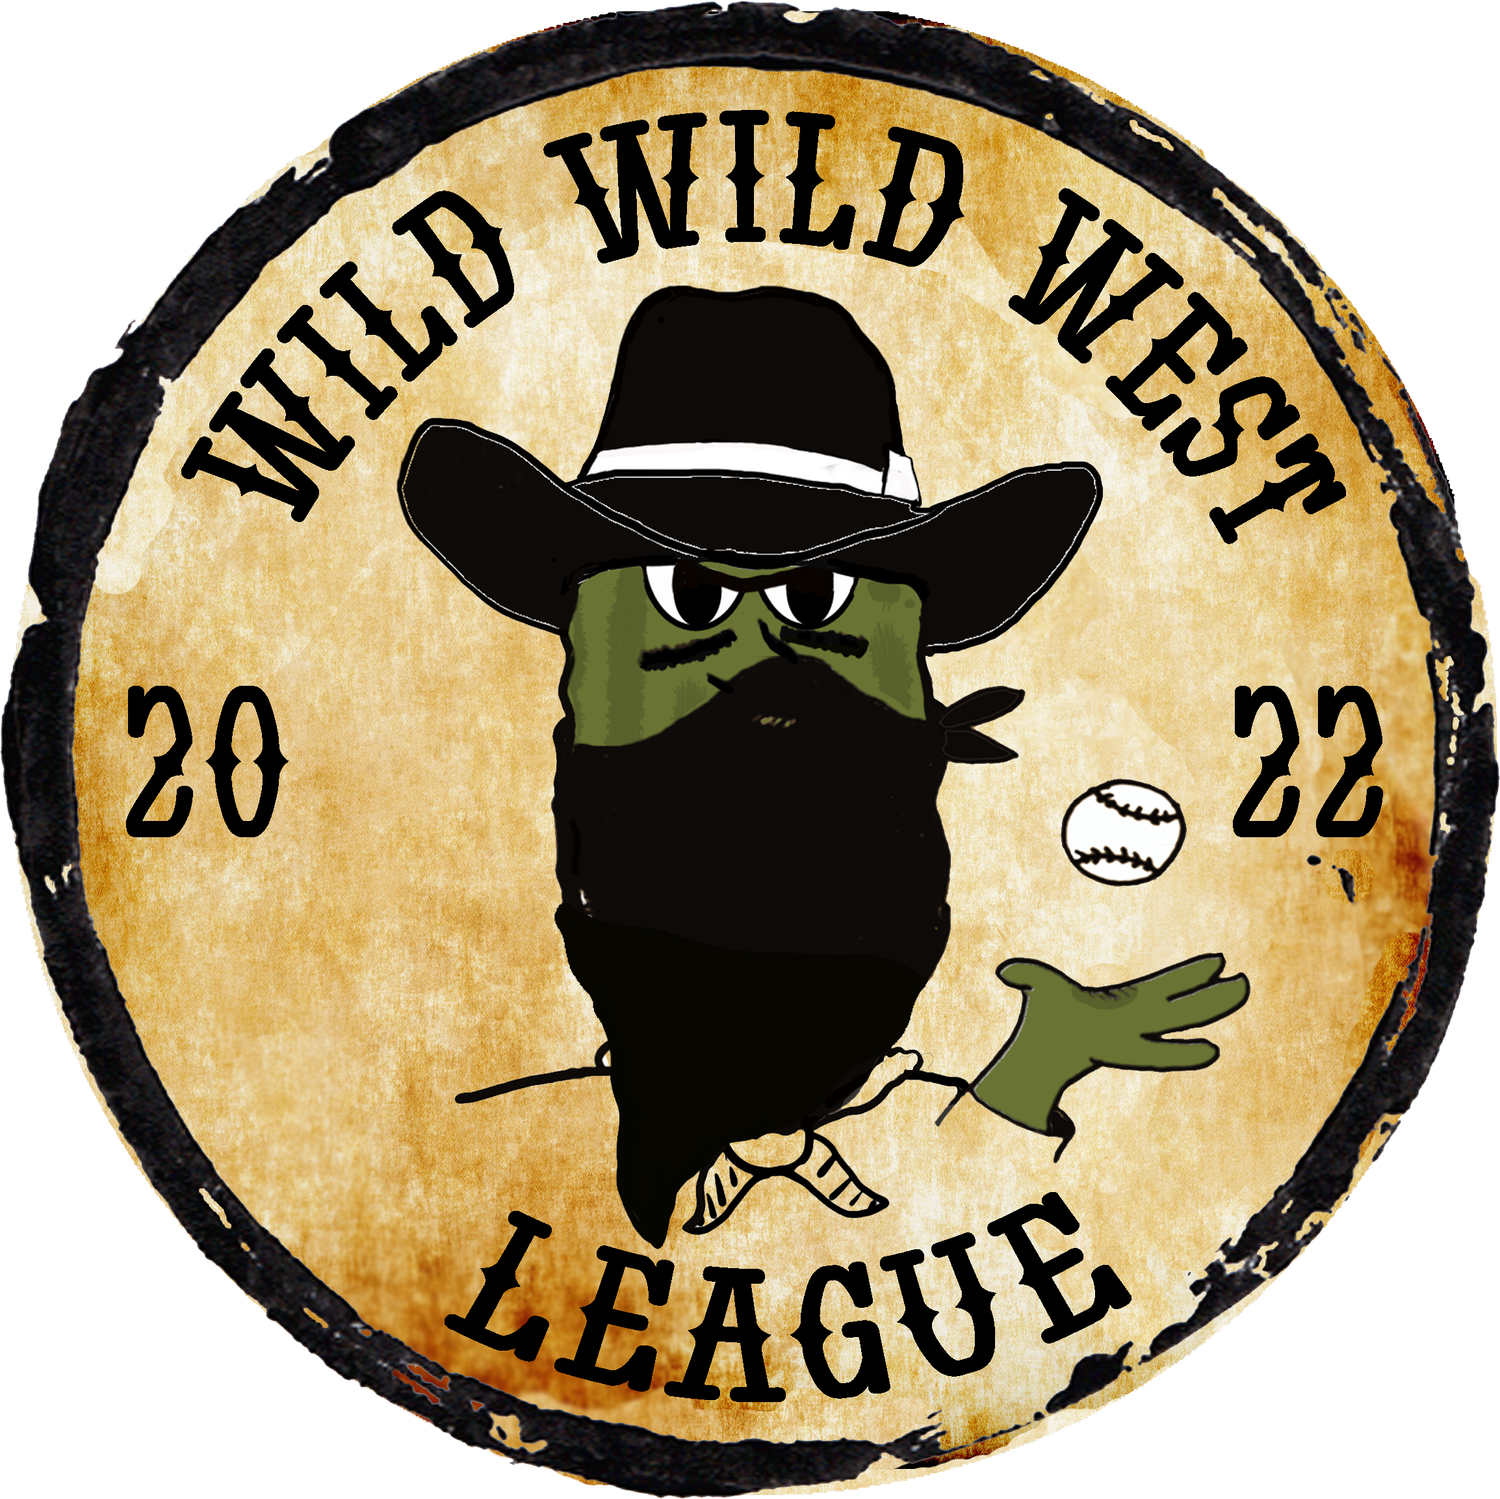 Wild Wild West League